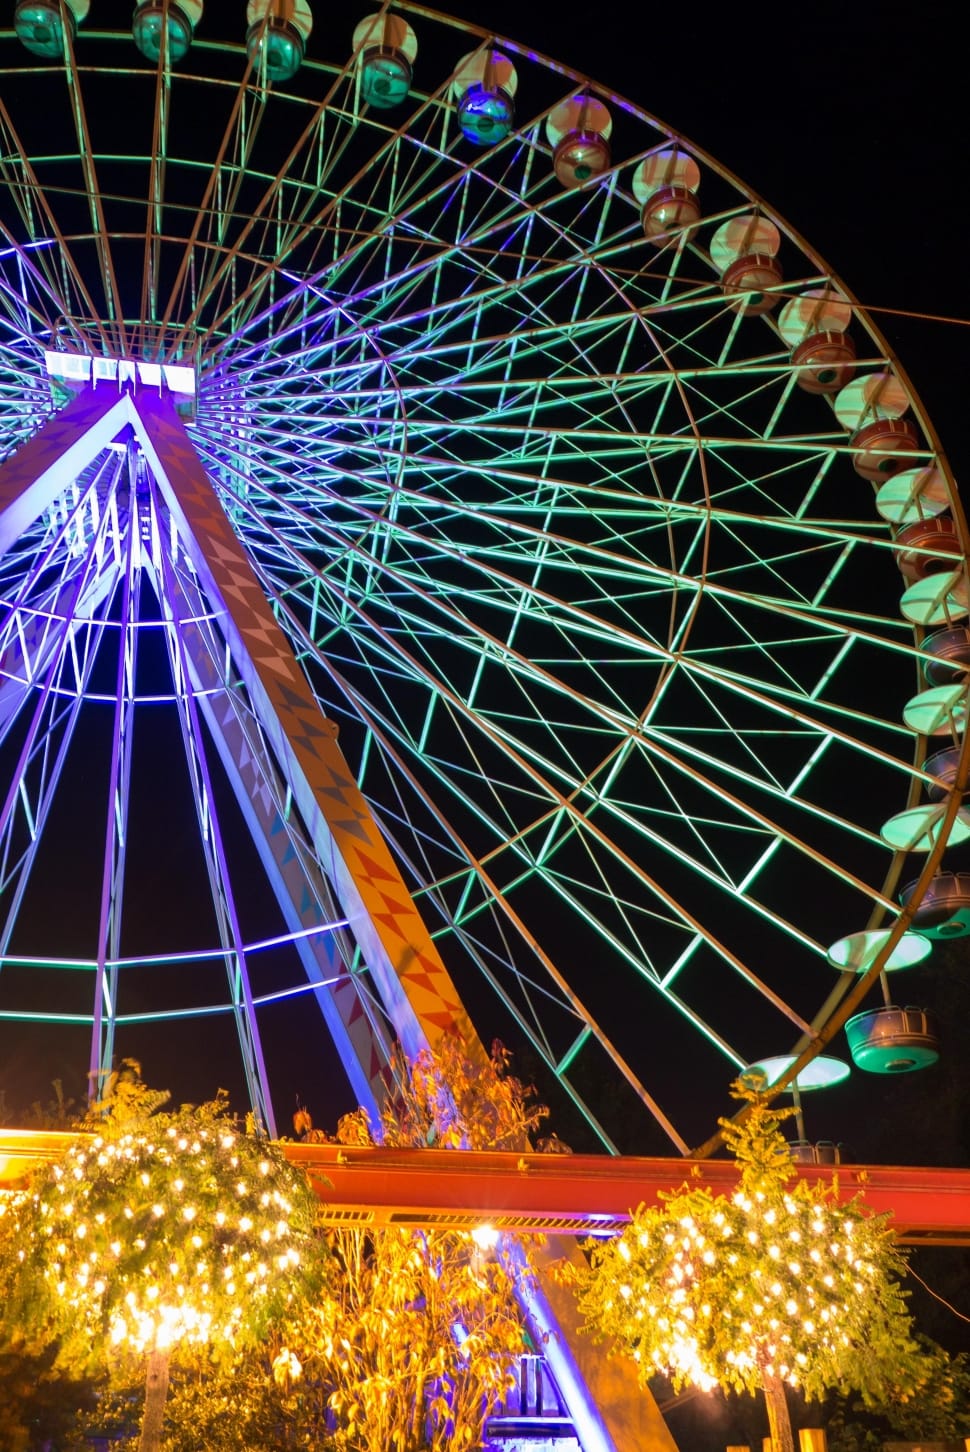 Slagharen, Theme Park, Netherlands, ferris wheel, illuminated preview